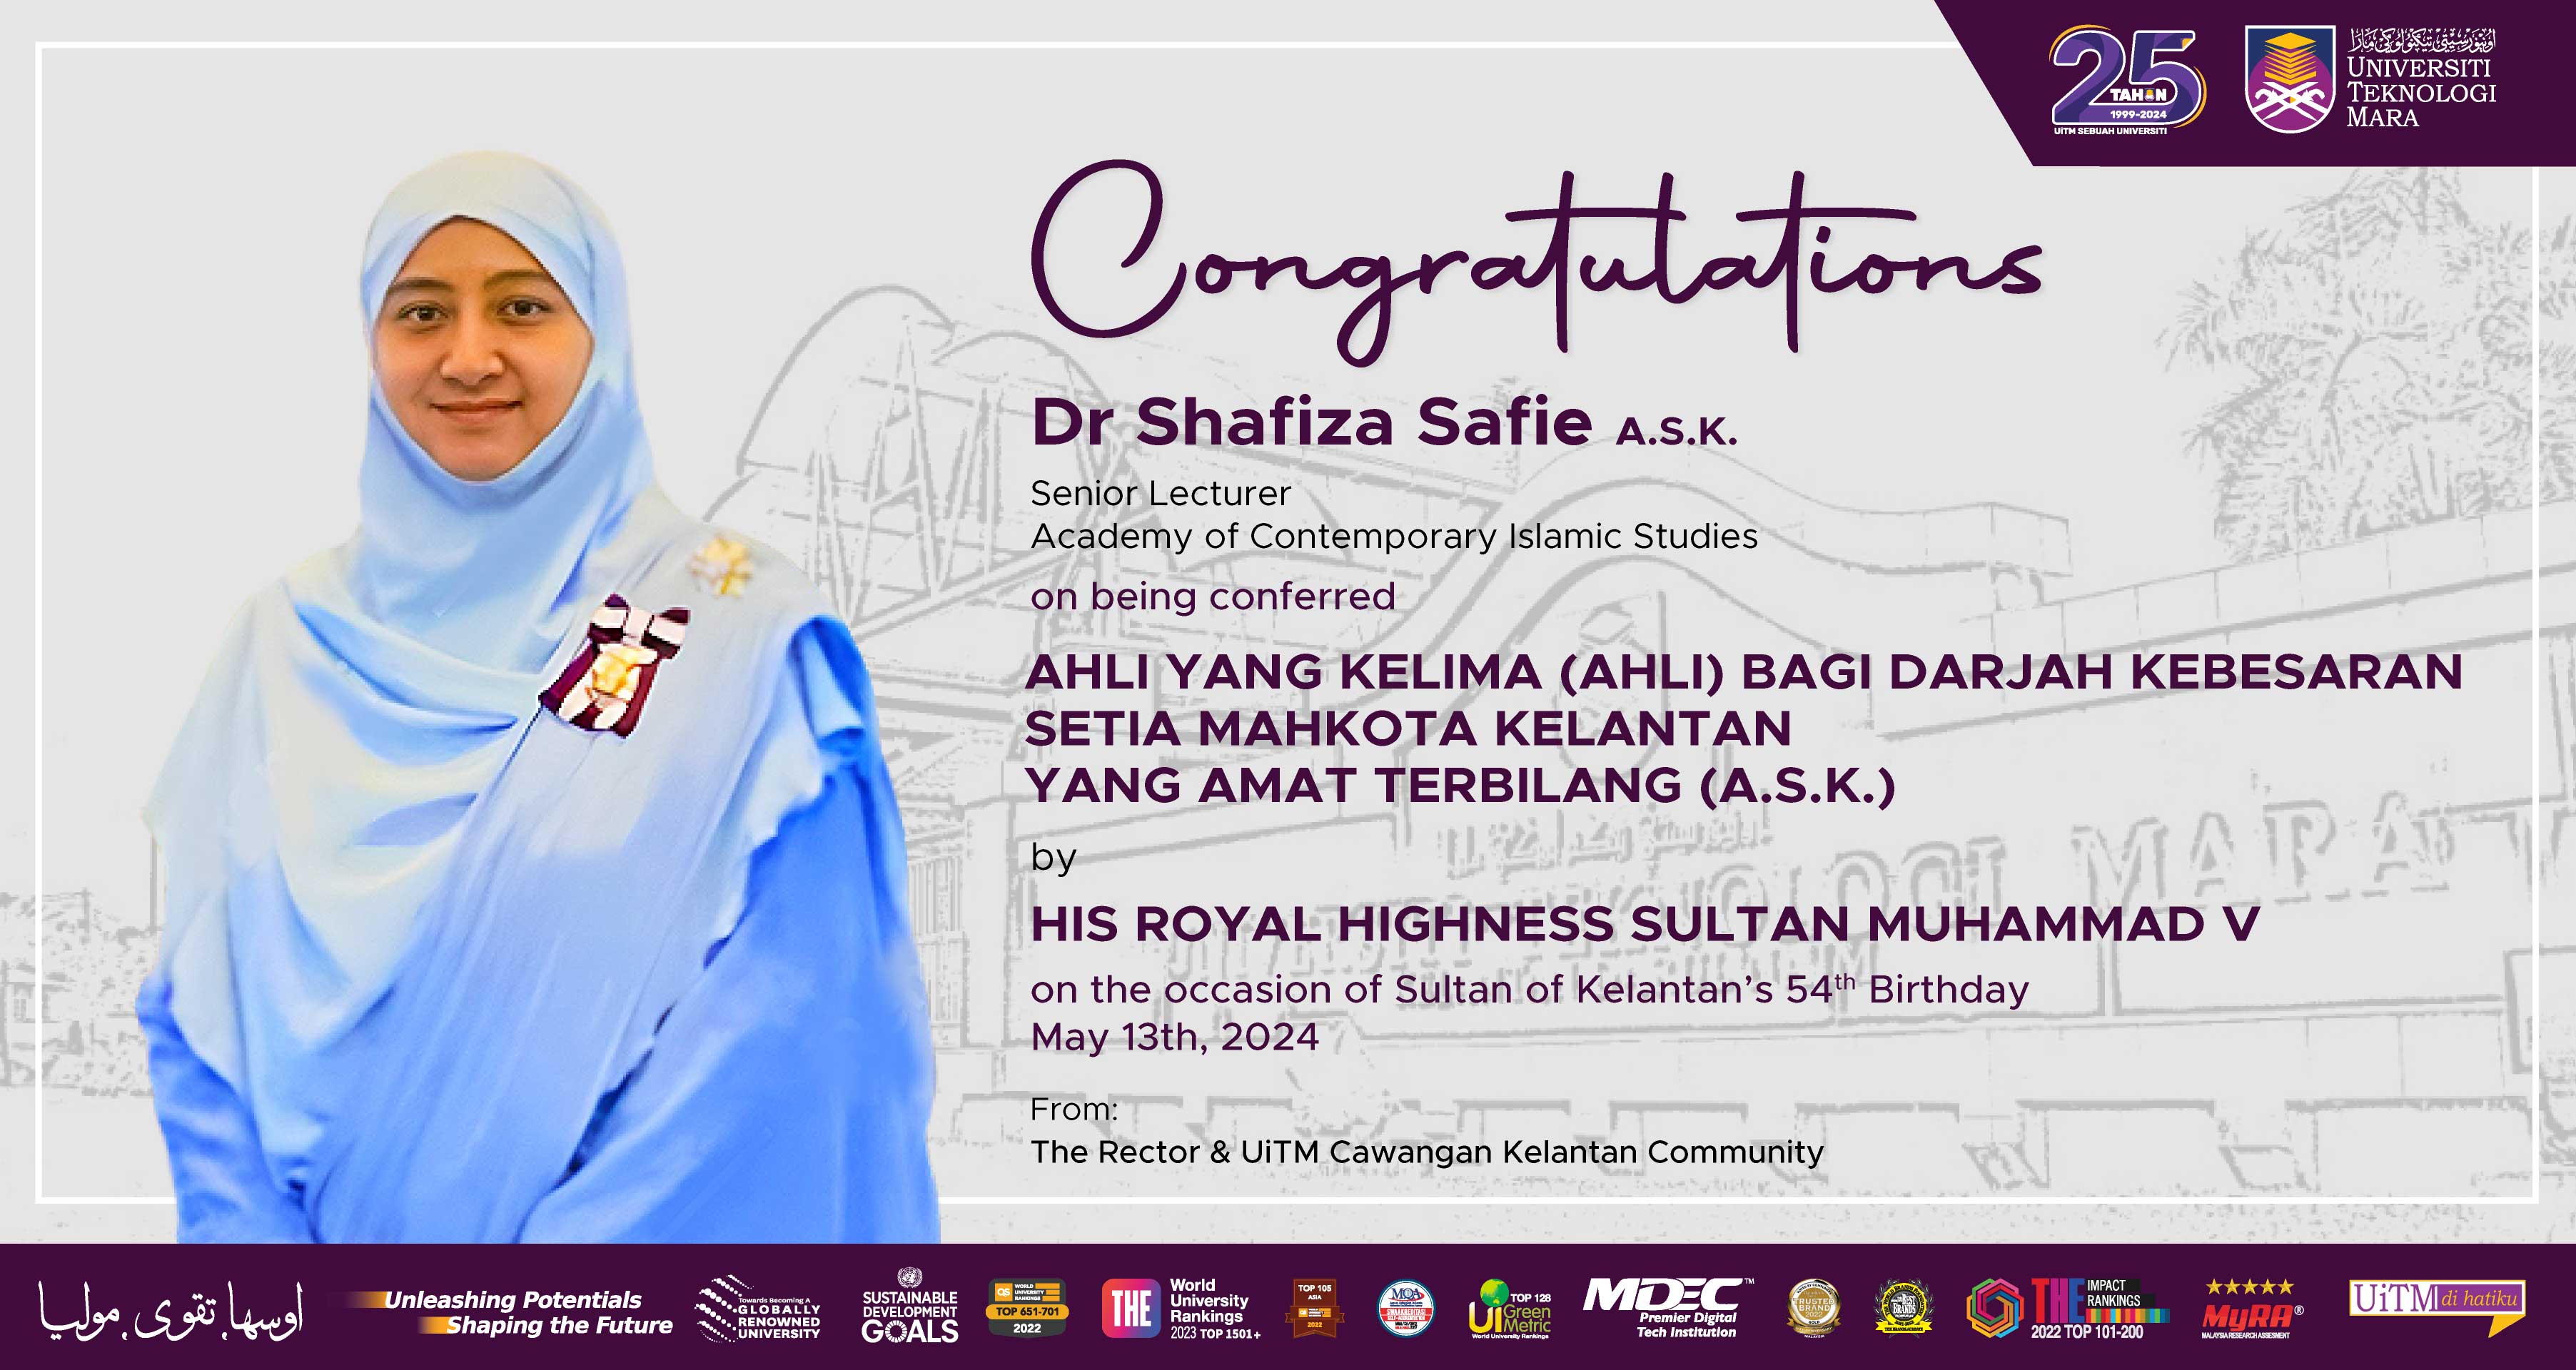 Congratulations!!! Dr Shafiza Safie A.S.K, Ahli Yang Kelima (Ahli) Bagi Darjah Kebesaran Setia Mahkota Kelantan Yang Amat Terbilang (A.S.K)